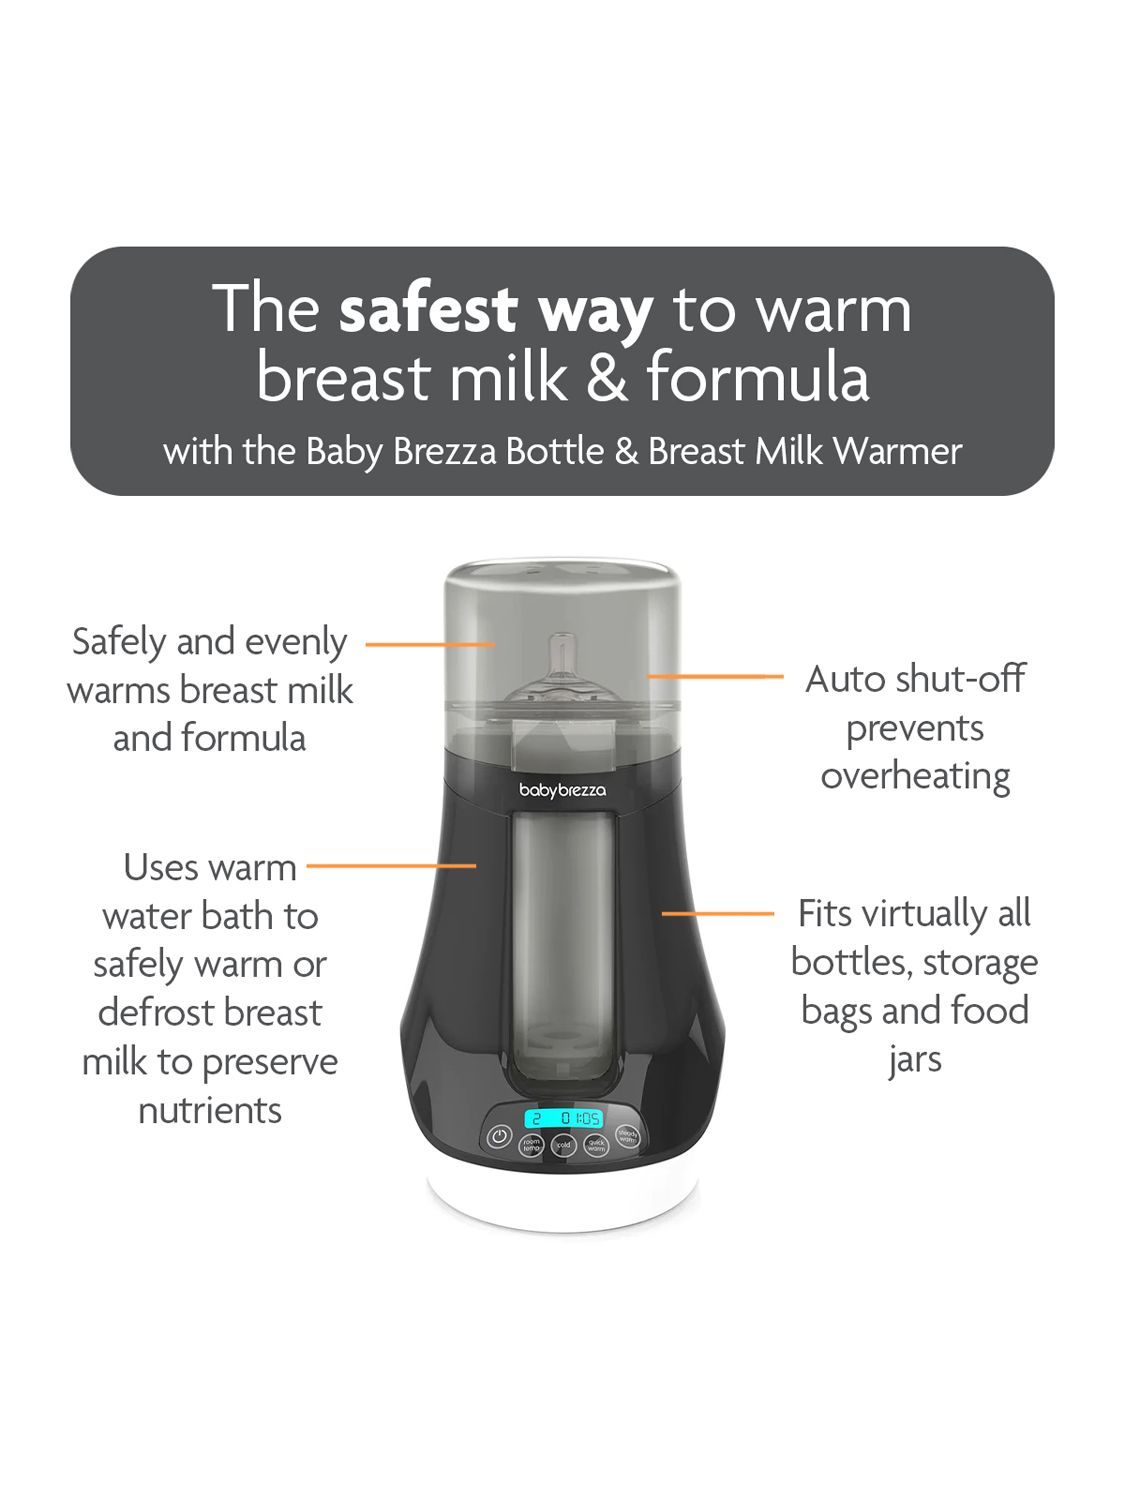 Baby Brezza Bottle, Breastmilk and Food Warmer